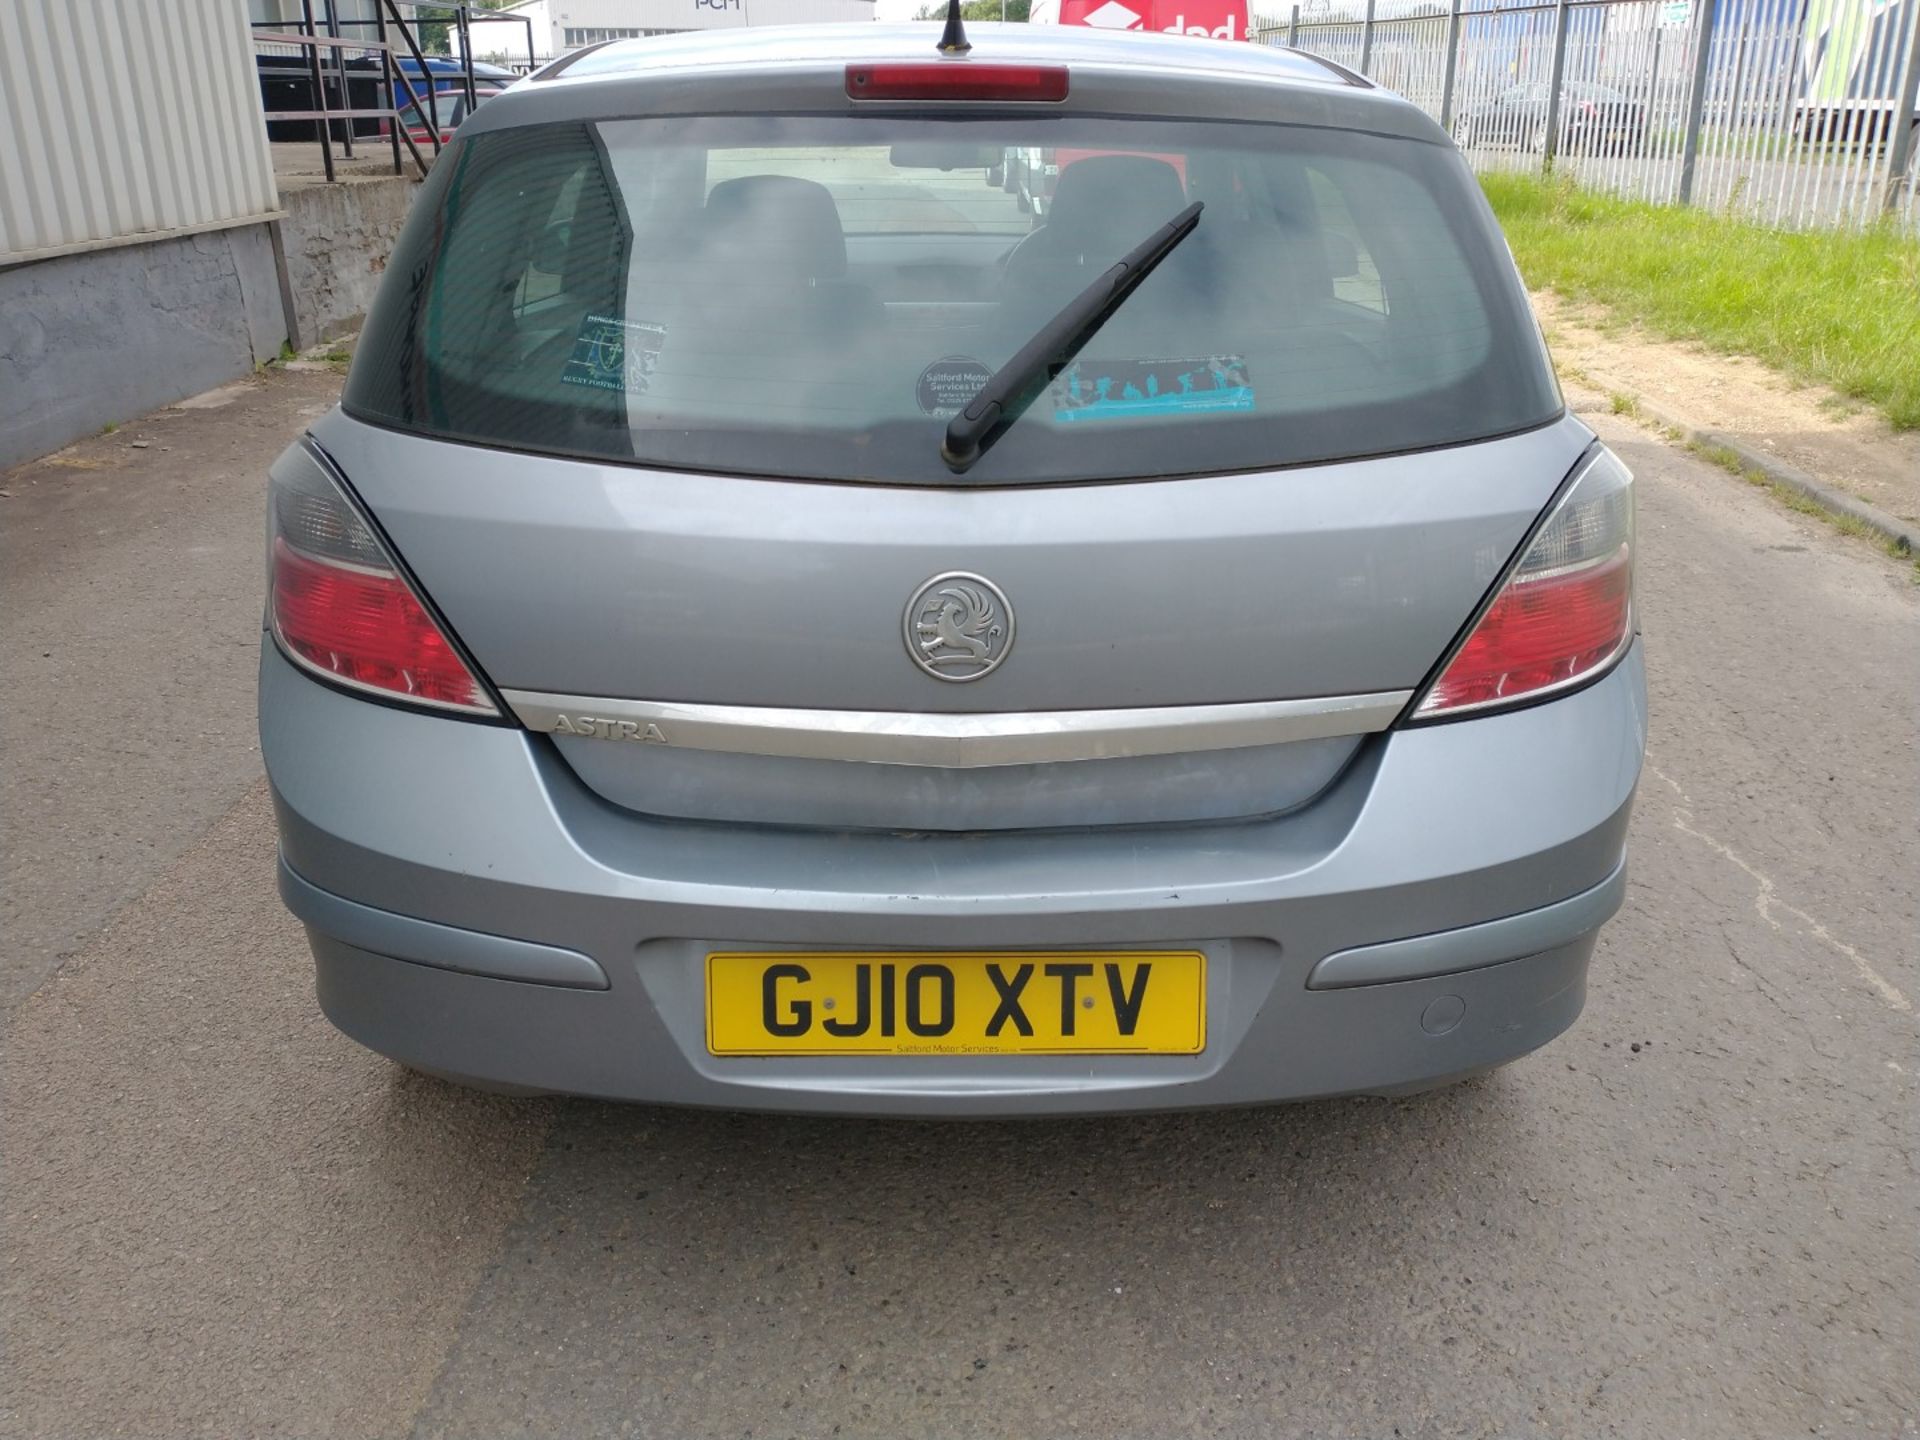 2010 Vauxhall Astra Active 5dr Hatchback 1.4 Petrol - CL505 - Ref: VVS0014 - NO VAT ON THE HAMMER - - Image 10 of 18